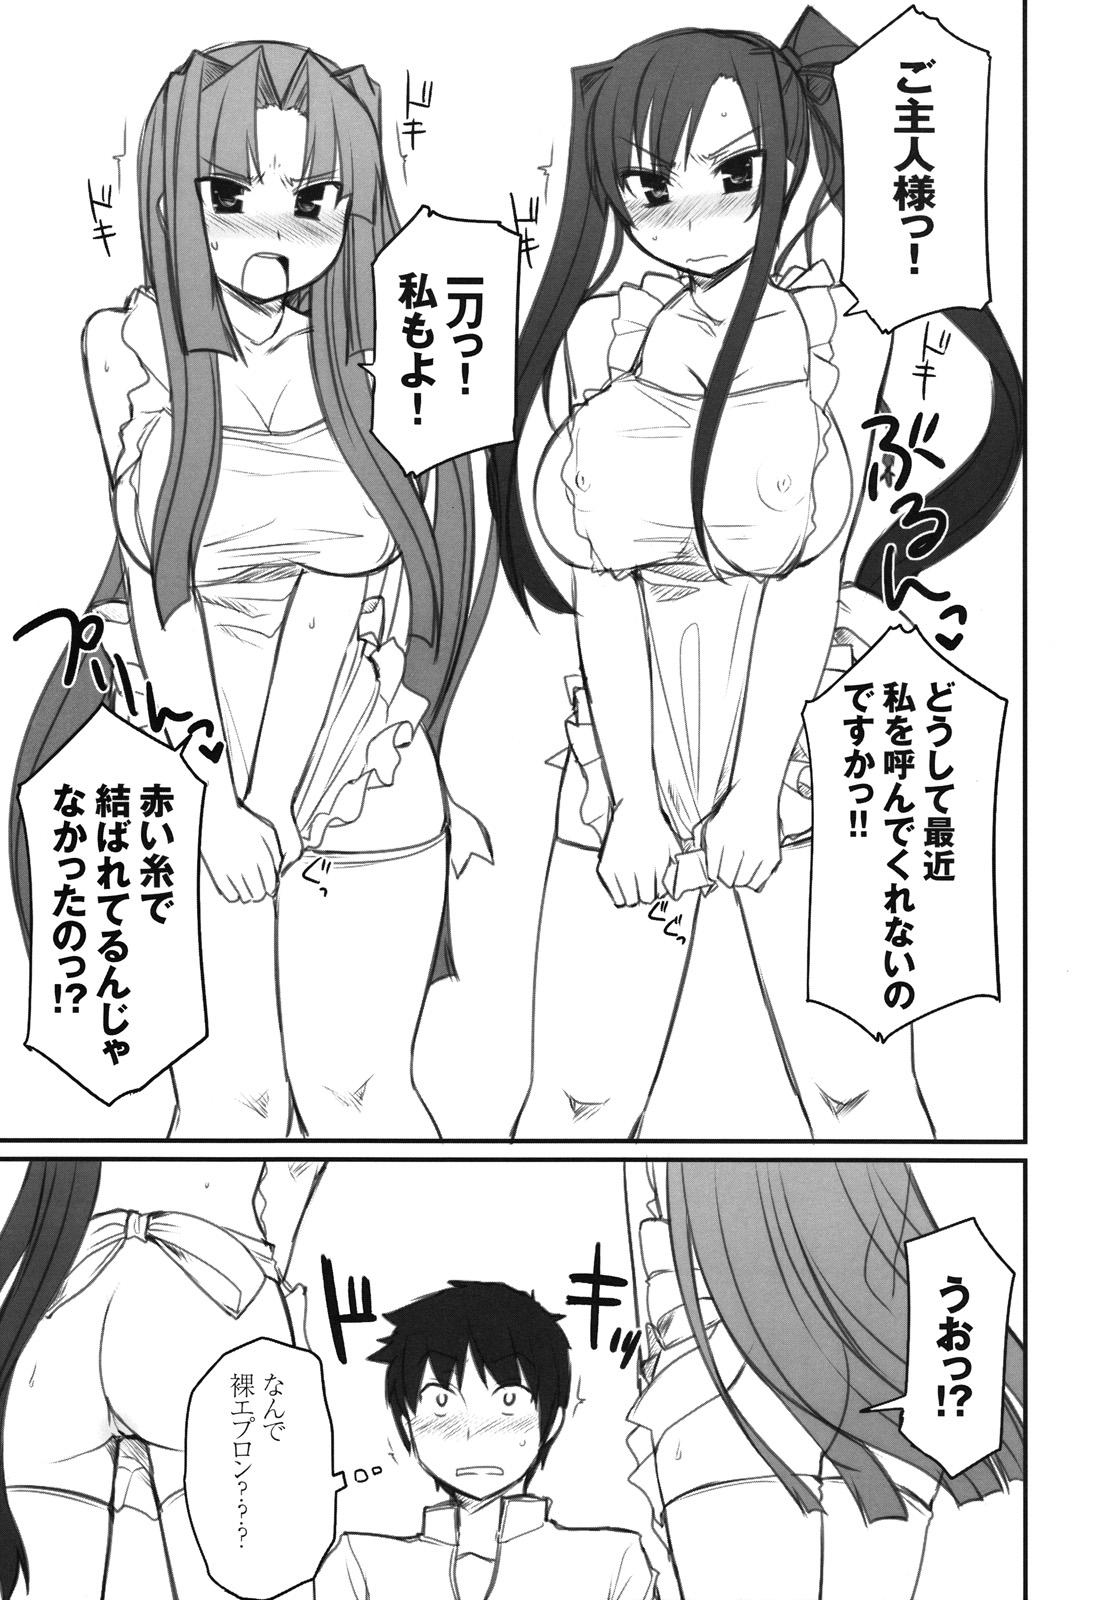 Licking Ryuuko Aiutsu！？ - Koihime musou Gangbang - Page 4